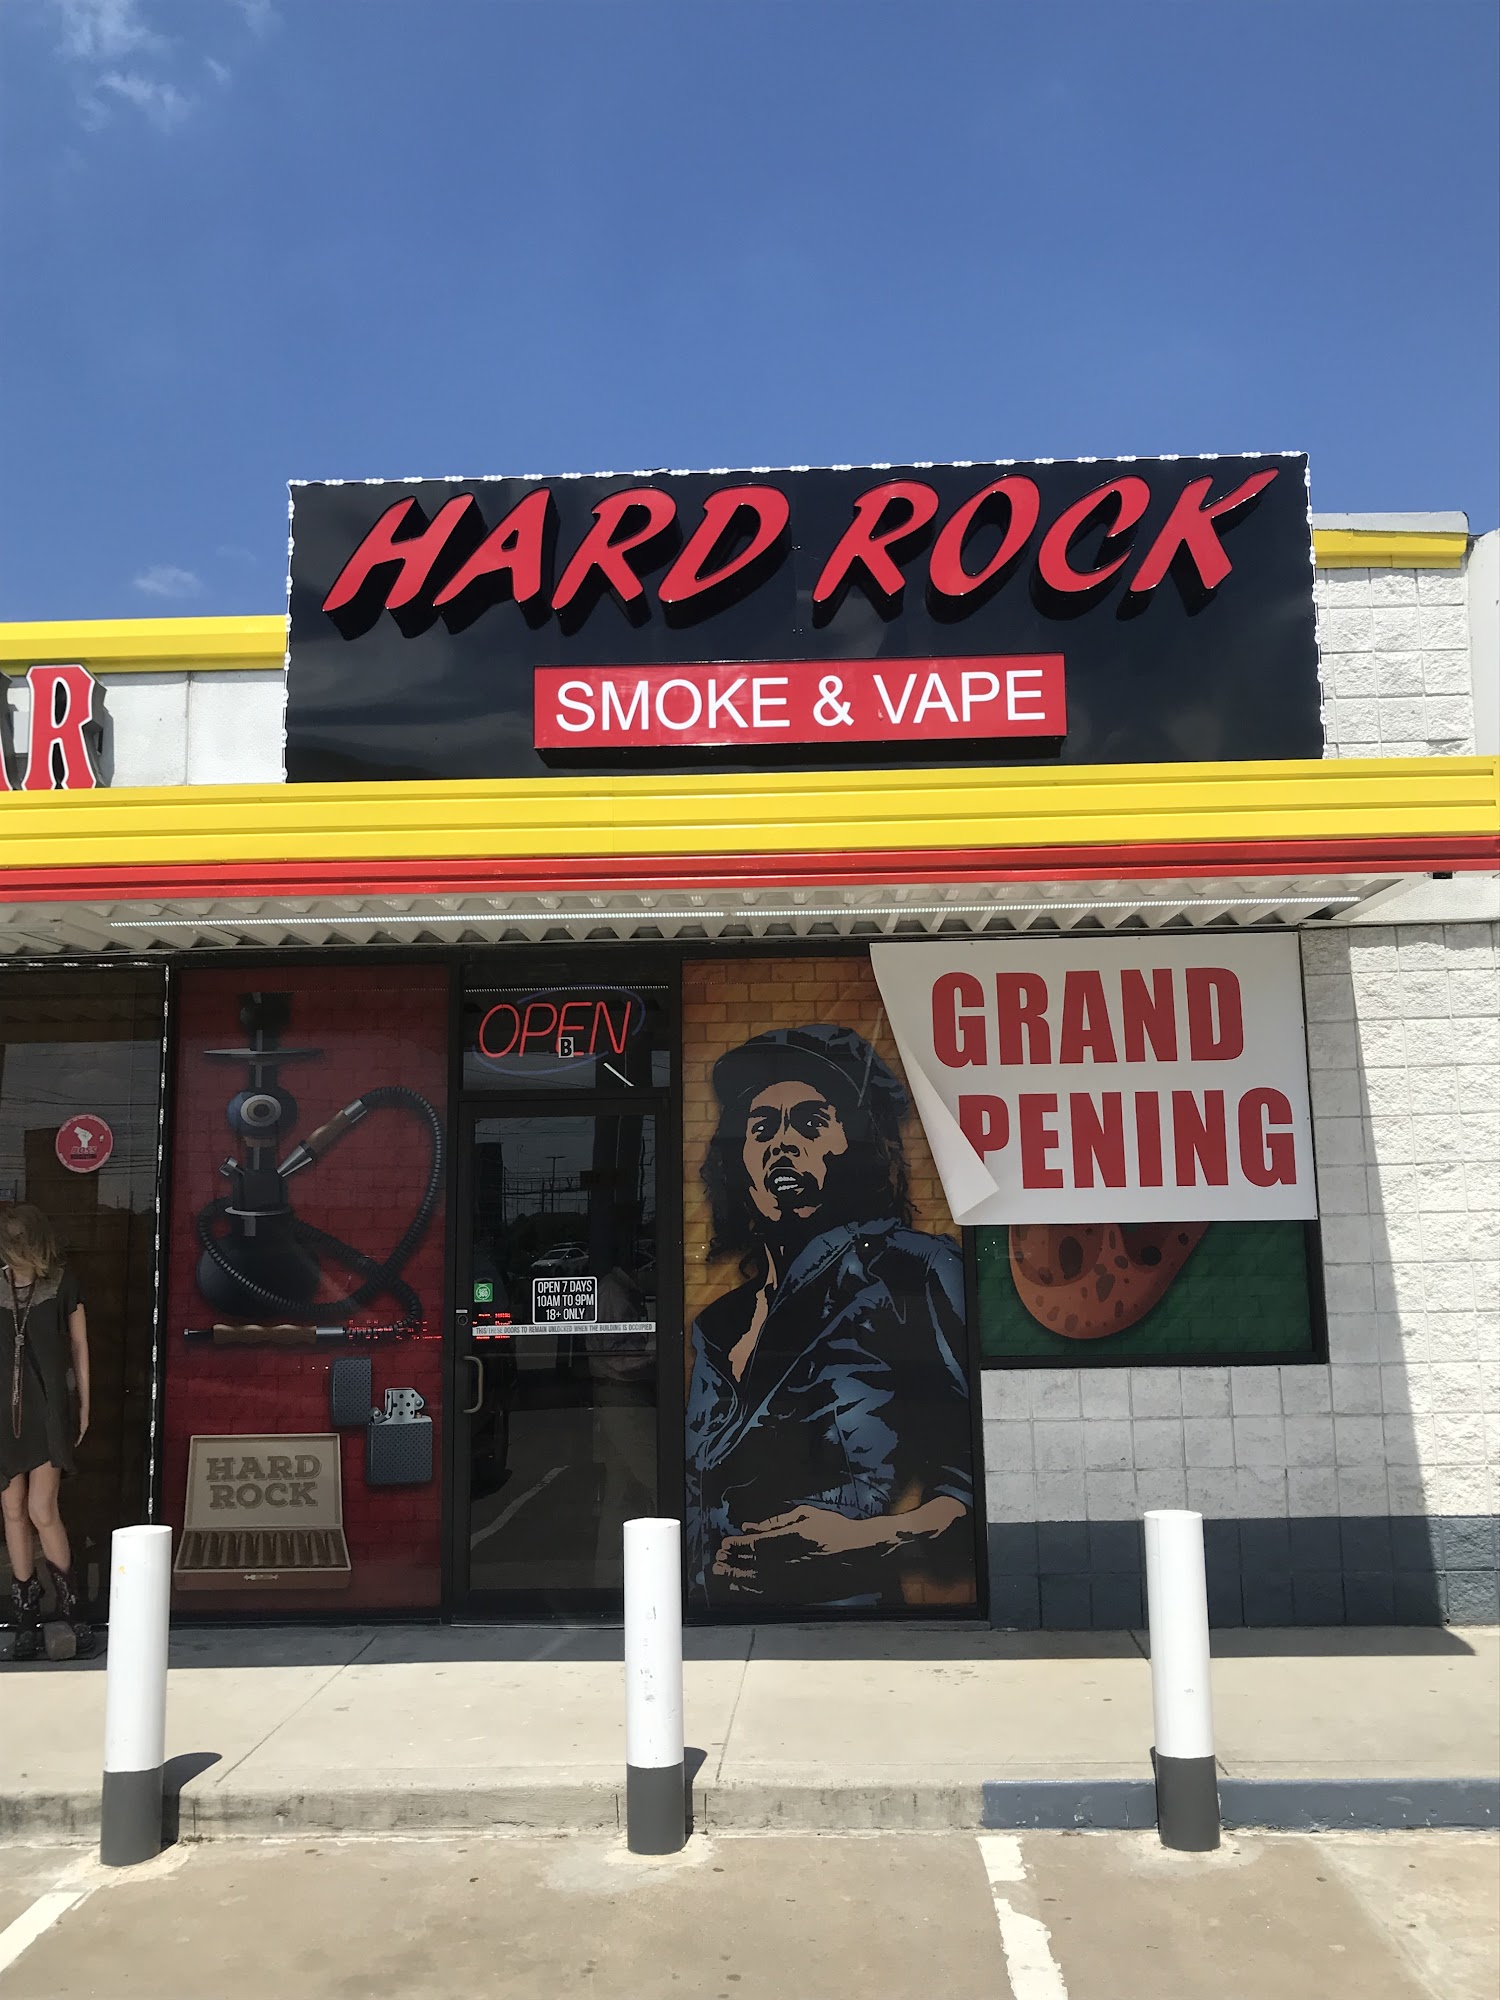 Hard Rock Smoke & Vape